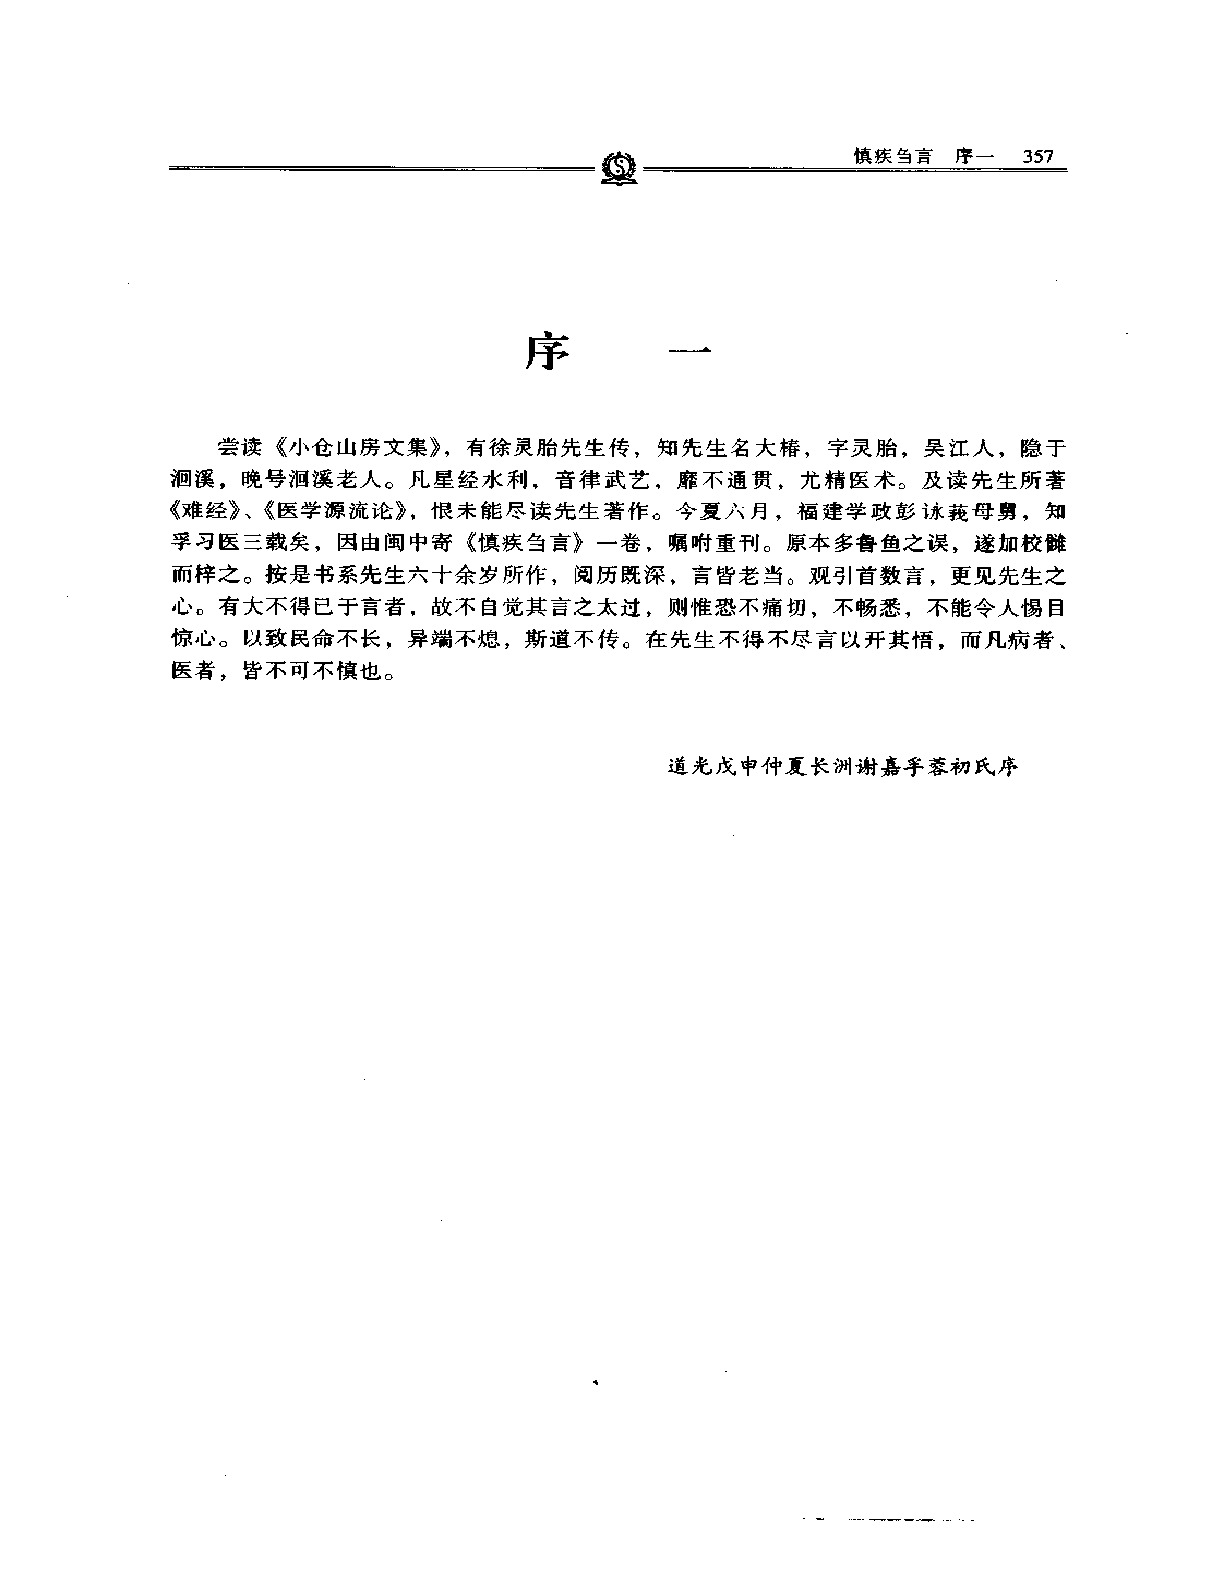 慎疾刍言——徐灵胎.PDF